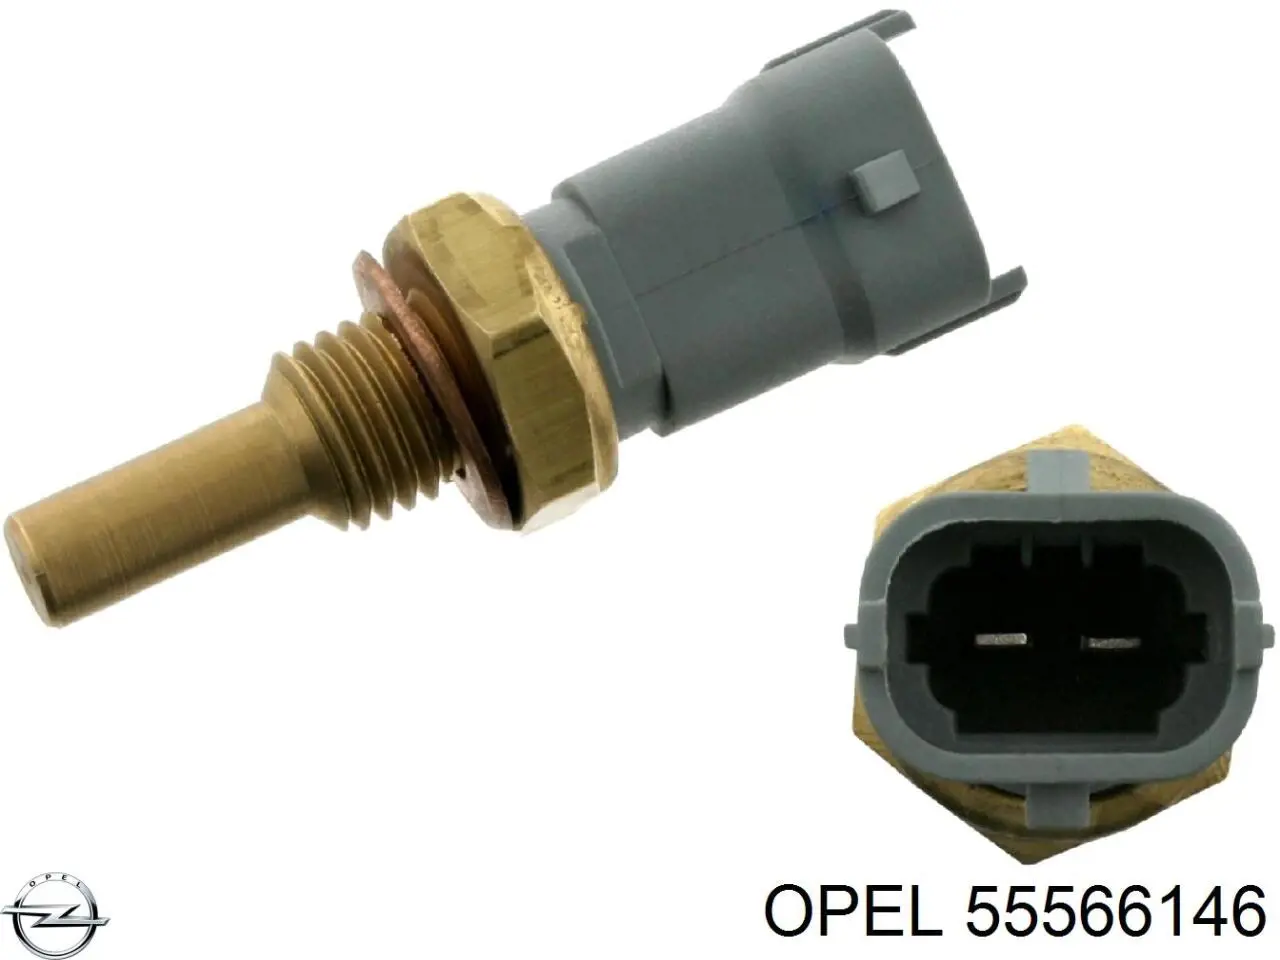 55566146 Opel sensor de temperatura del refrigerante